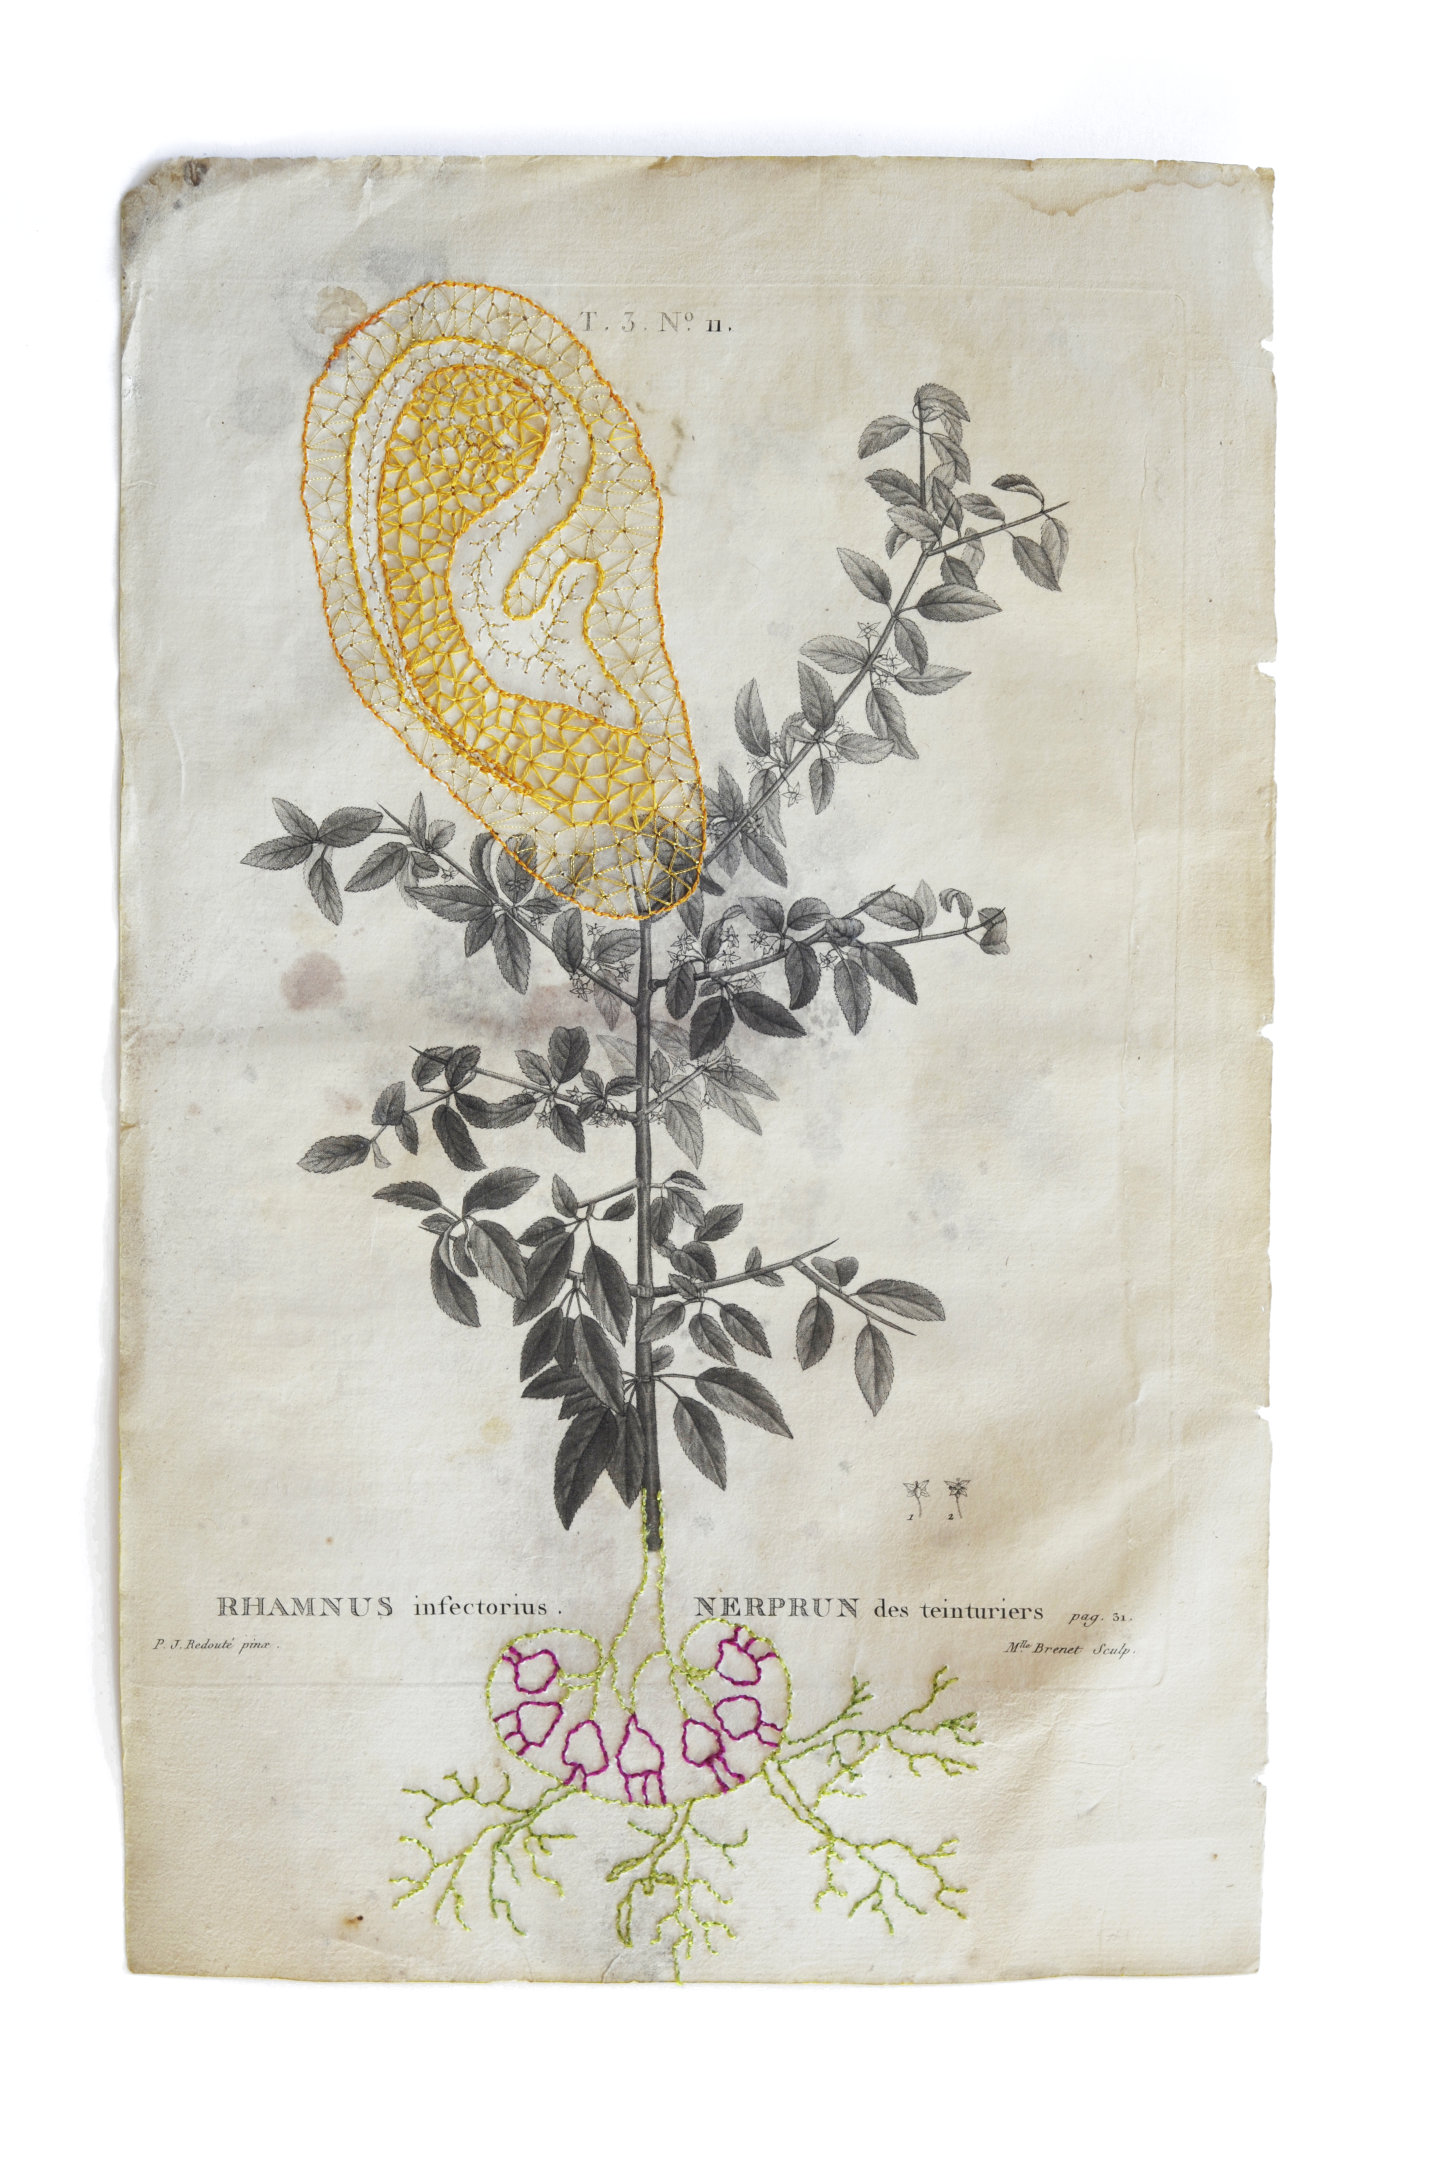 Rhamnus infectorius - Nerprun des teinturiers - Tubercule et racines brodées sur une planche botanique ancienne en papier